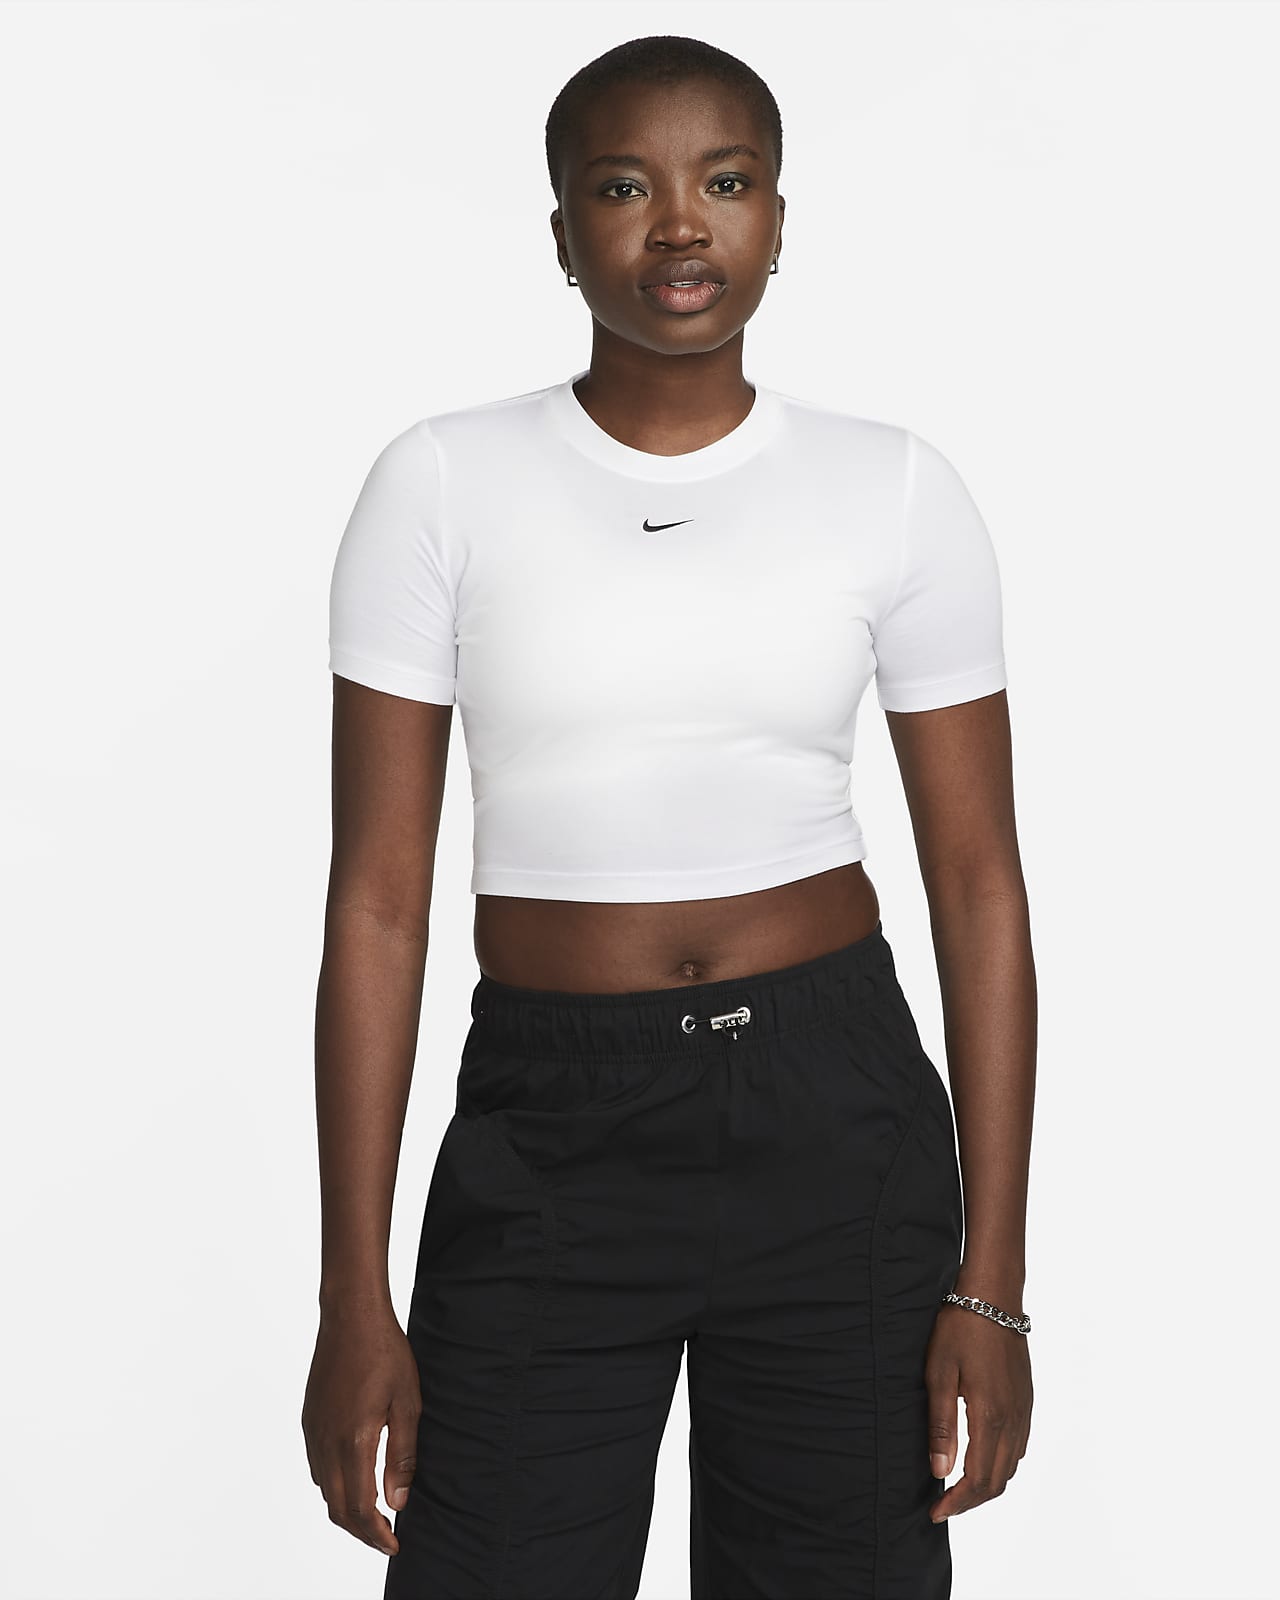 Γυναικείο T-Shirt σε στενή γραμμή και πιο κοντό μήκος Nike Sportswear Essential